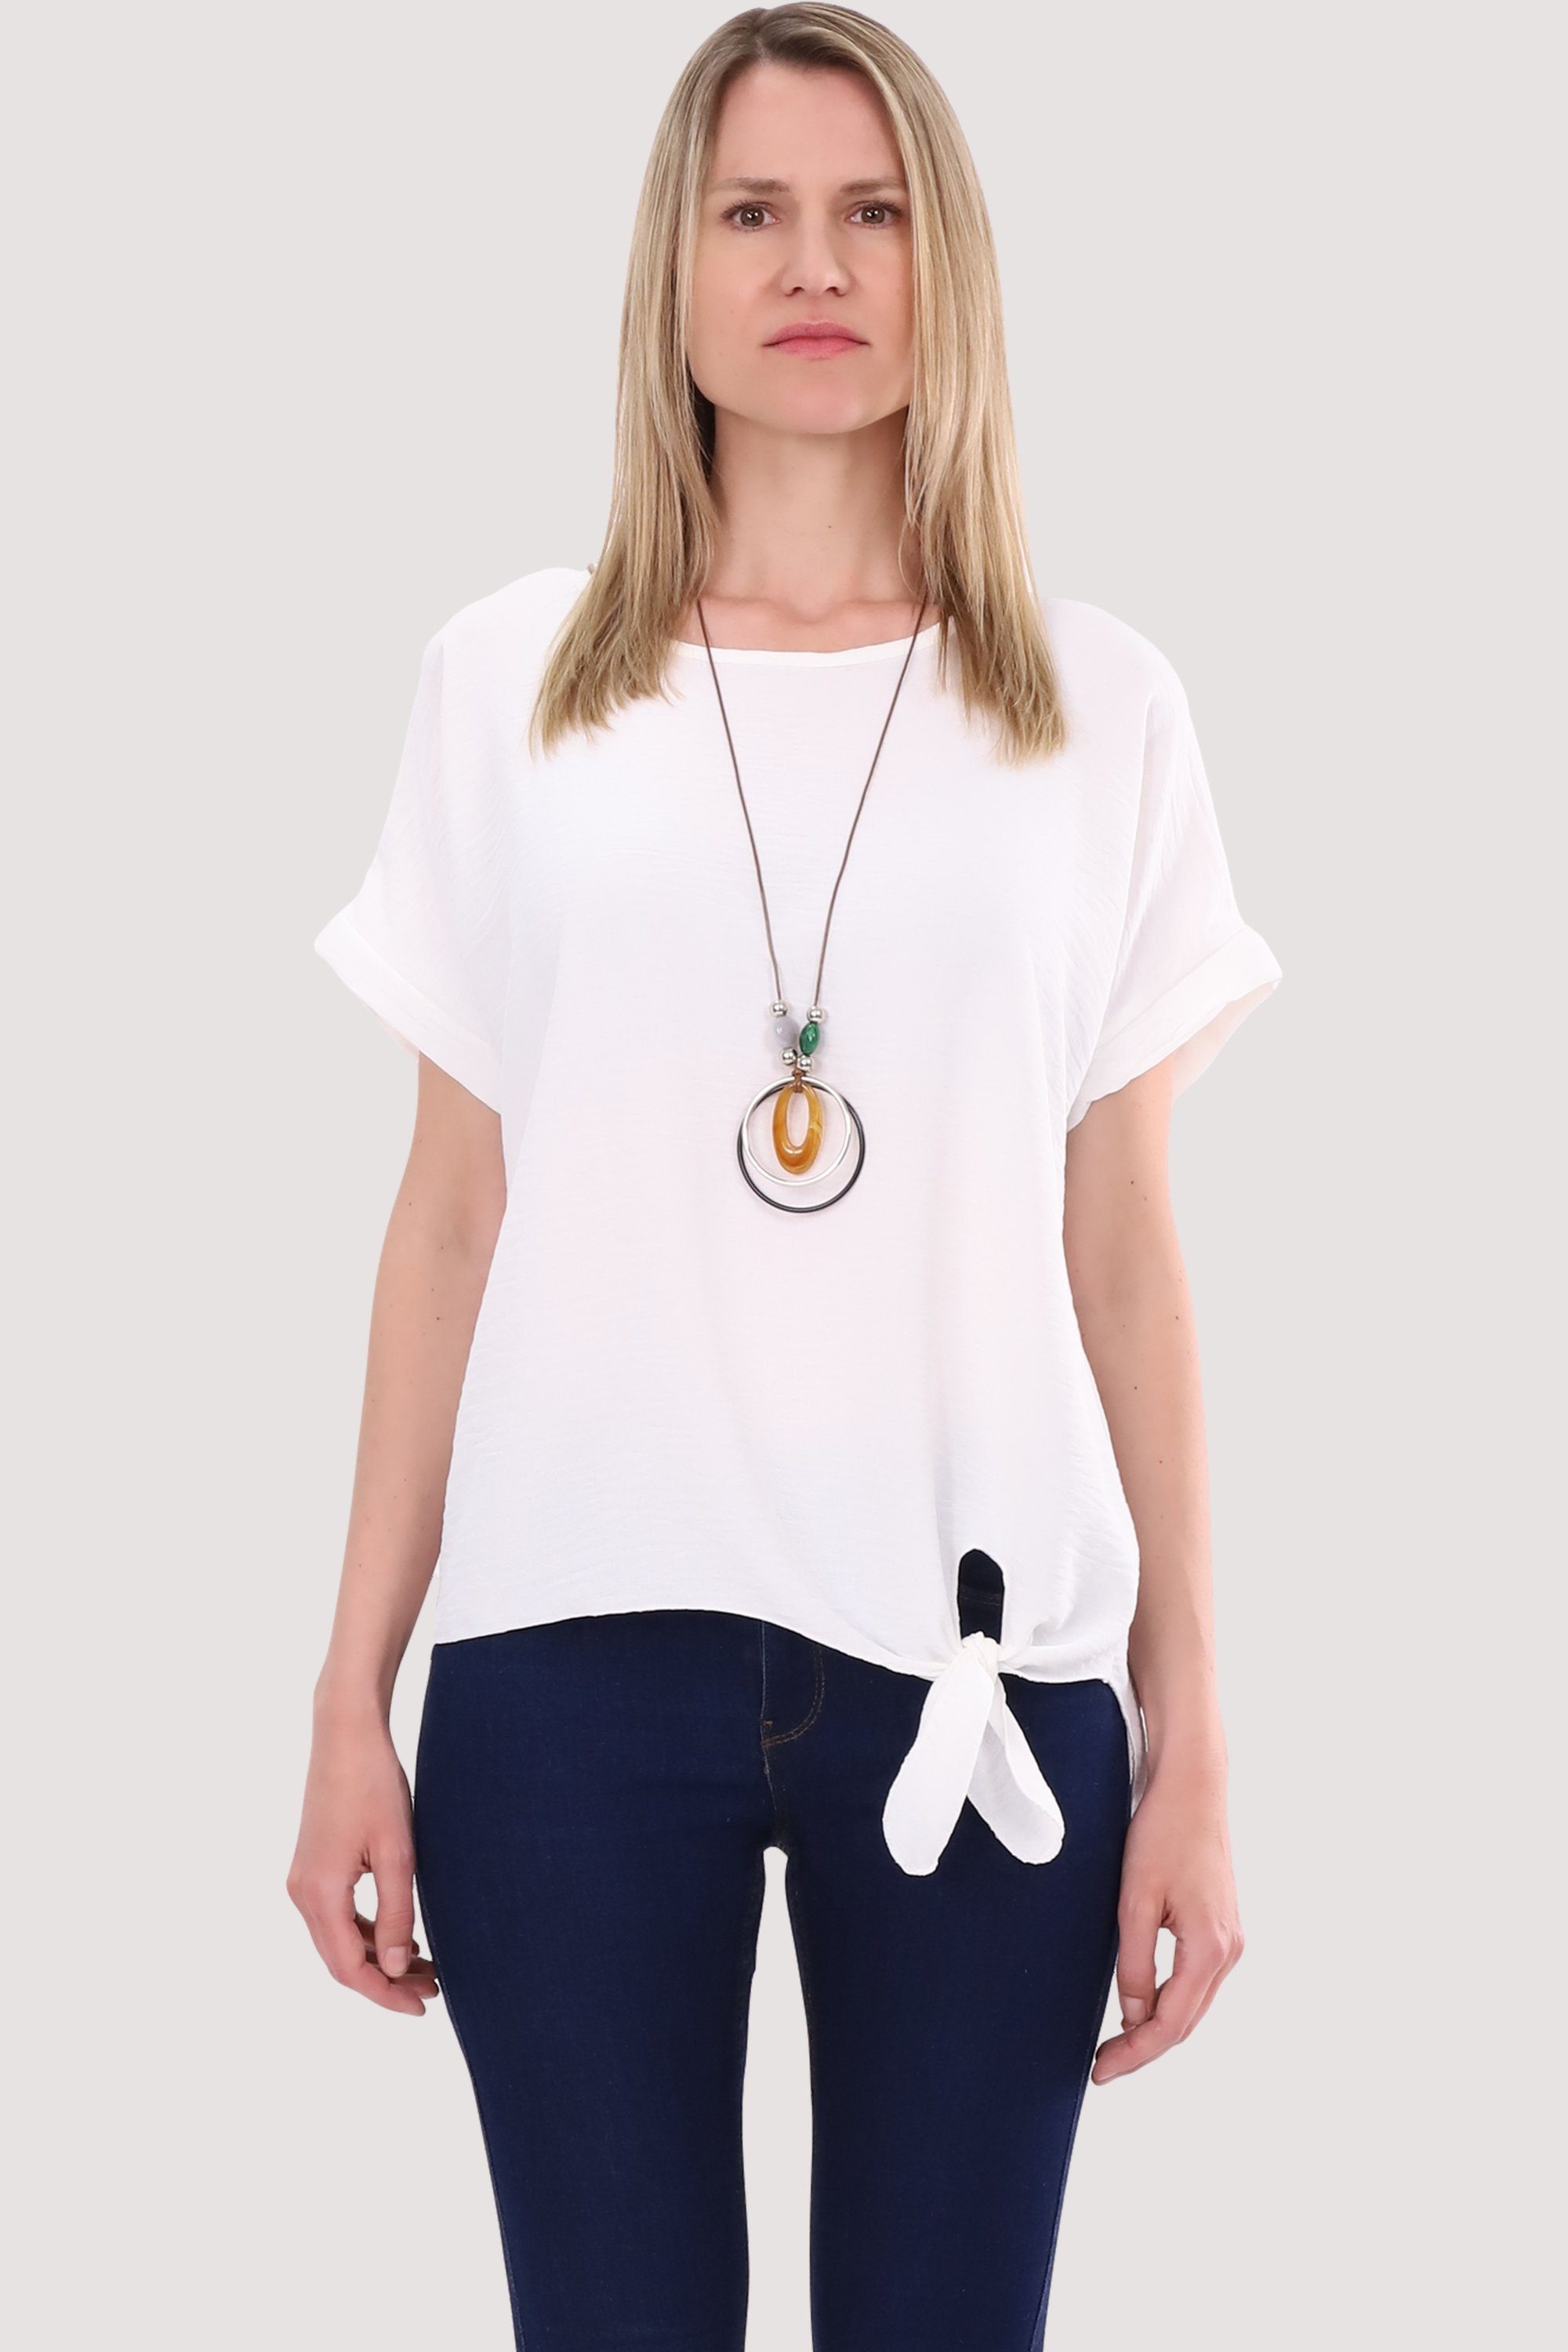 malito more than fashion Blusenshirt 10508 mit Bindeknoten und Kette Einheitsgröße weiß | T-Shirts